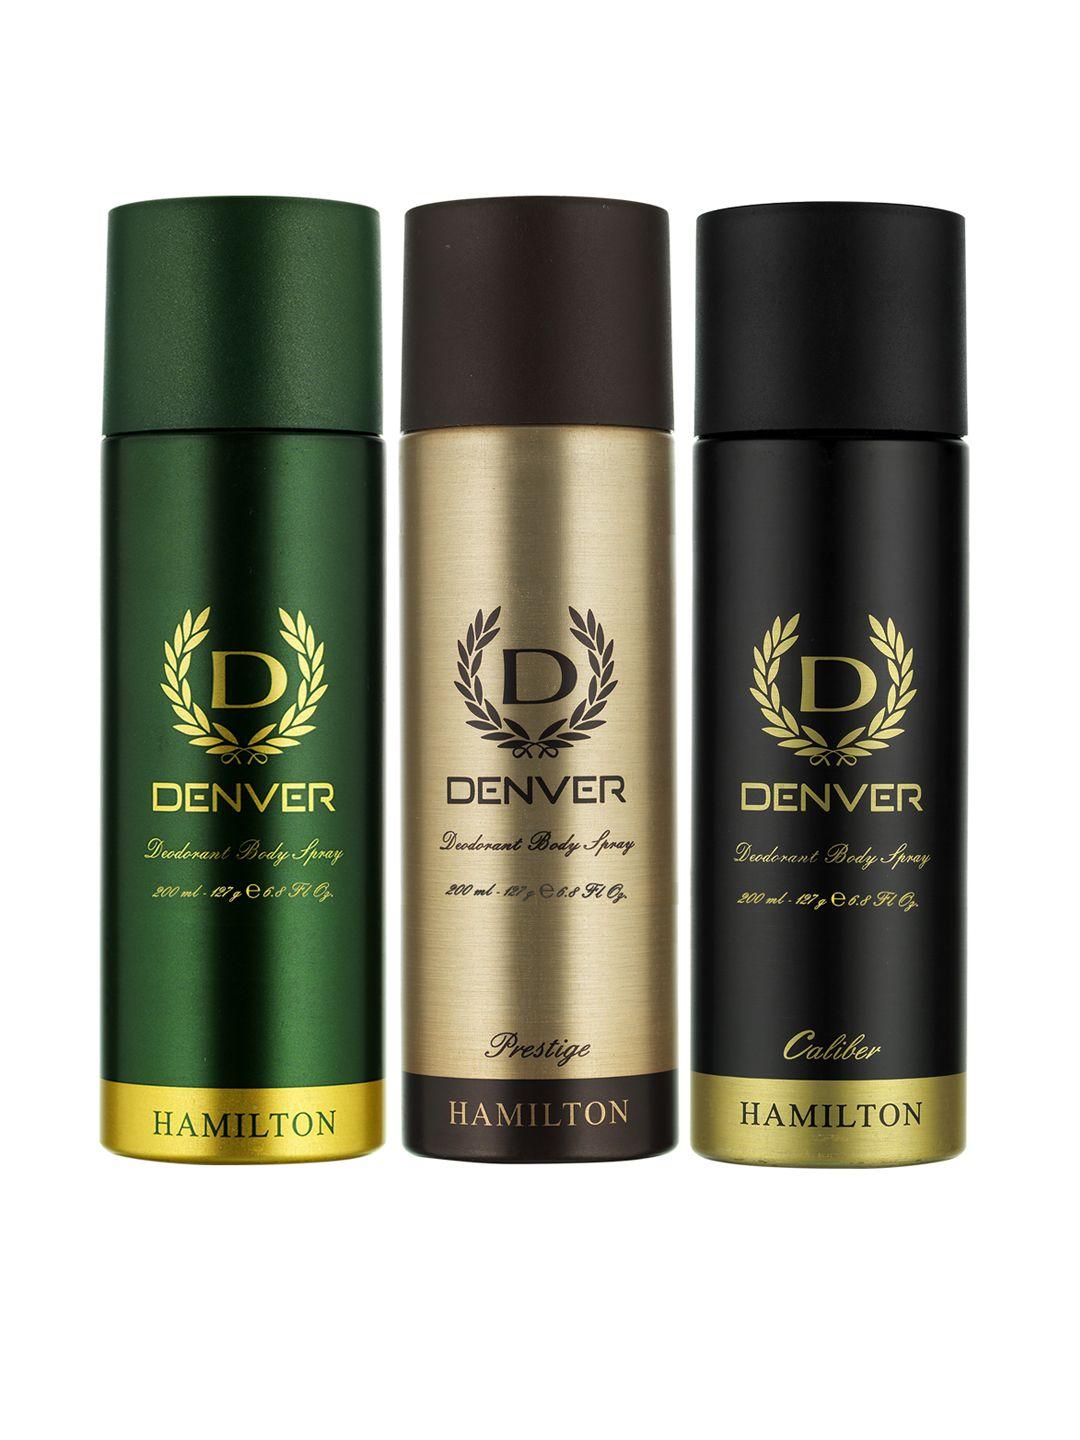 denver set of 3 hamilton, prestige and caliber deodorant body sprays